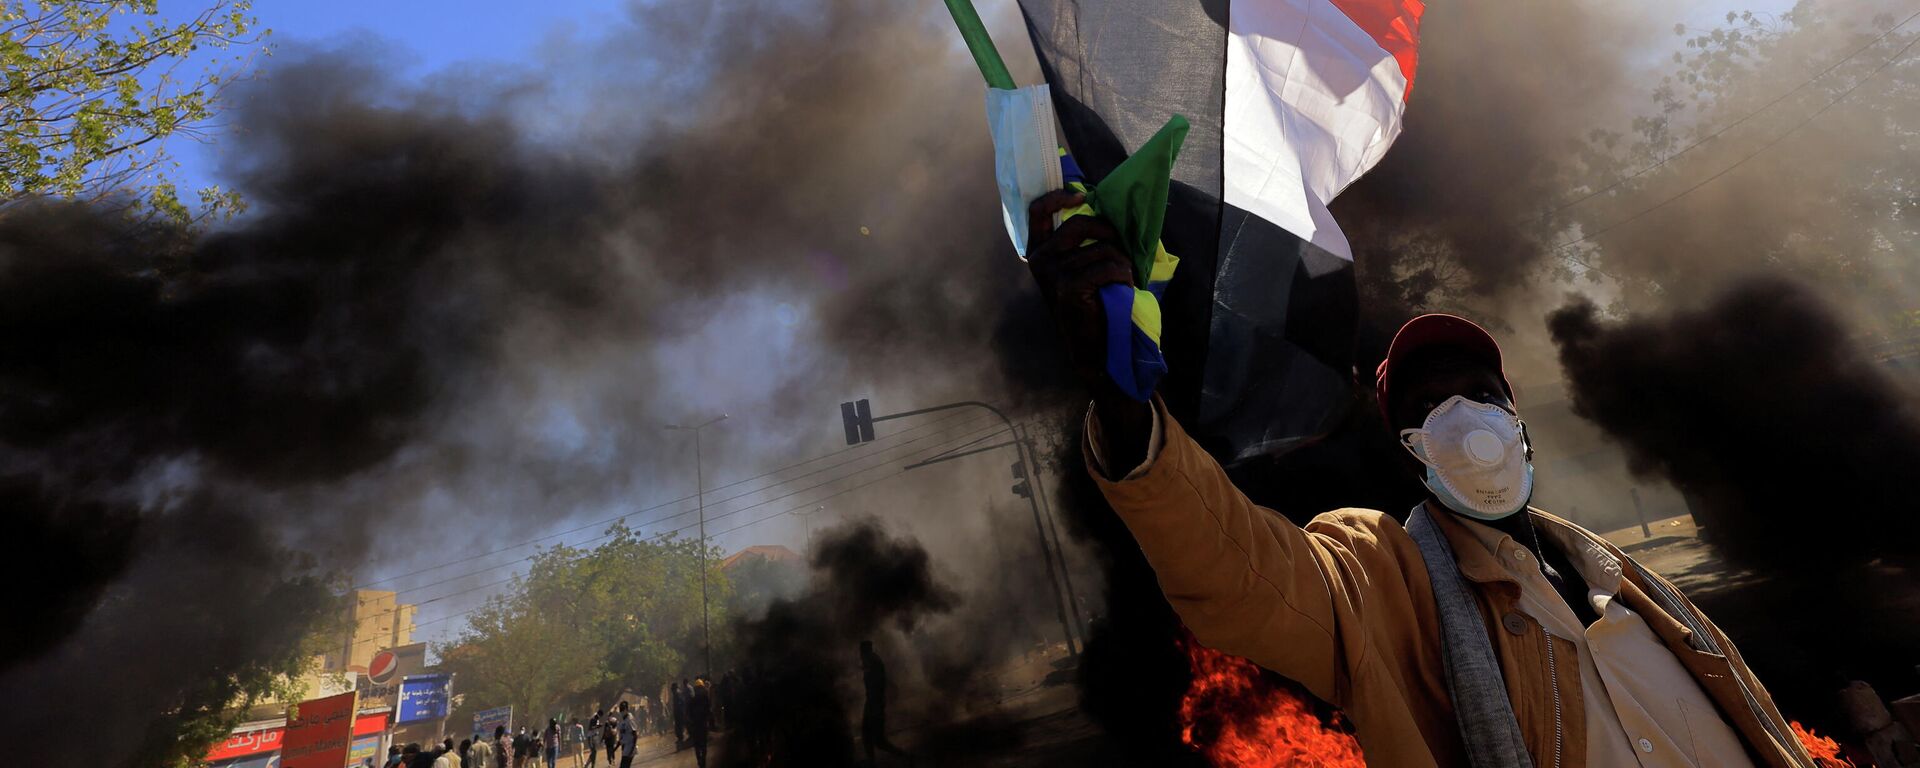 متظاهر في السودان يرفع علم بلاده أثناء احتجاجات الجمعة 31 ديسمبر  - سبوتنيك عربي, 1920, 18.01.2022